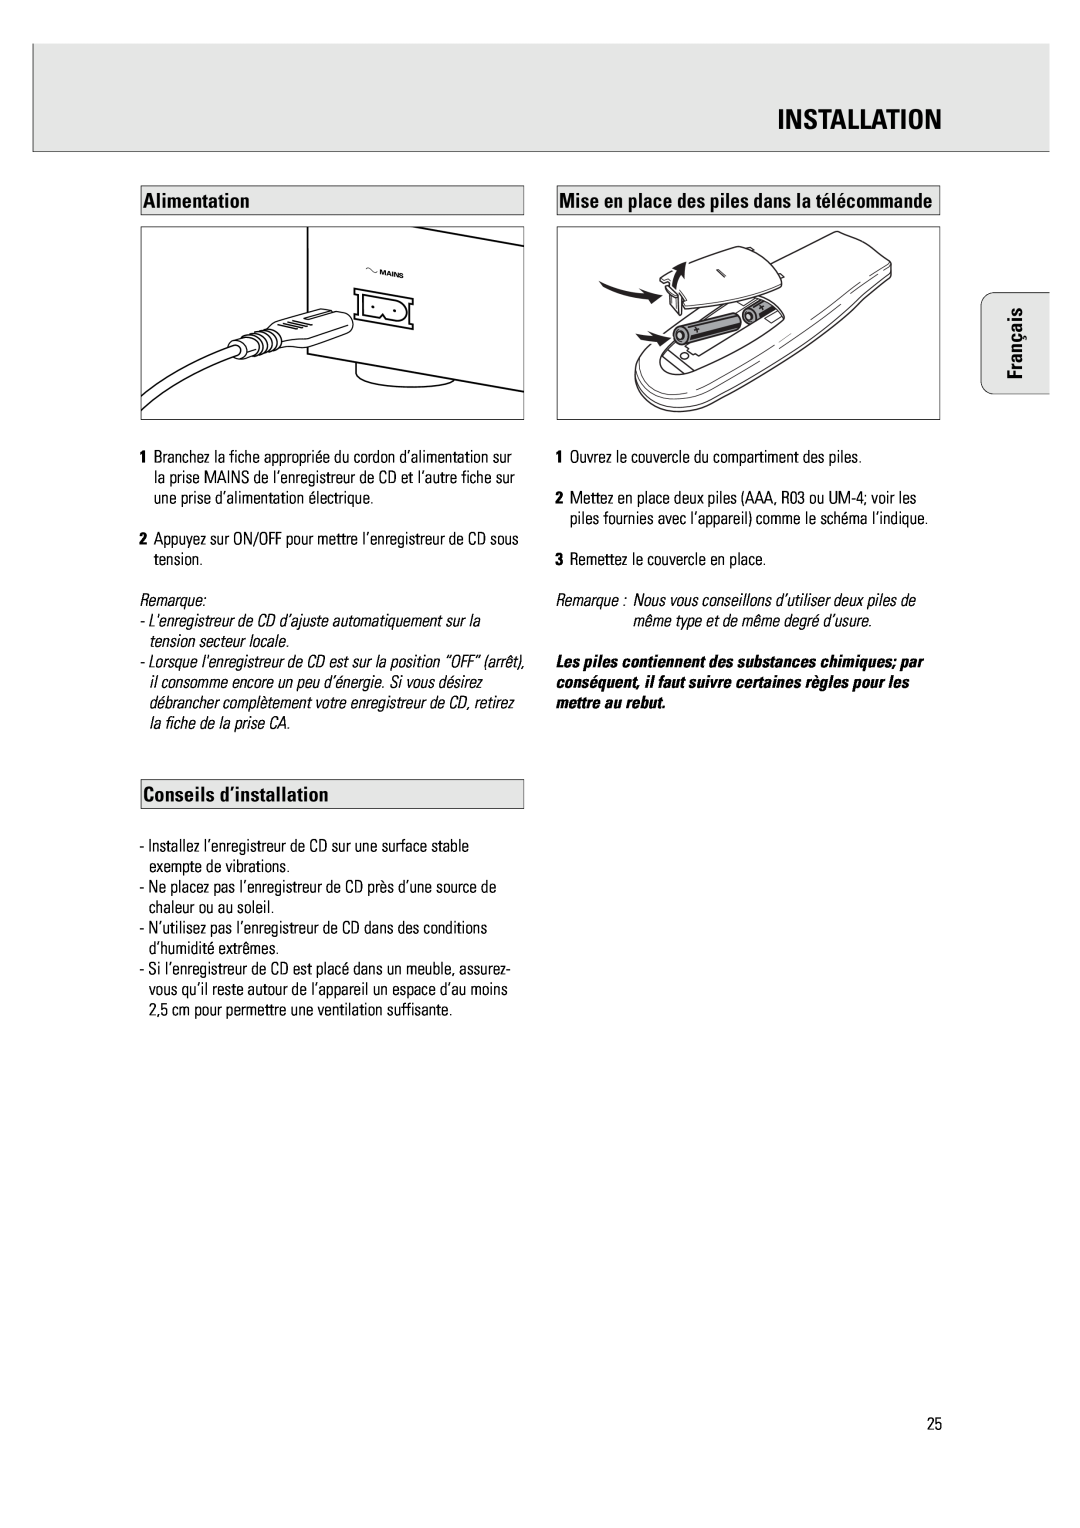 Philips CDR 760 manual Alimentation, Mise en place des piles dans la télécommande, Conseils d’installation, Installation 